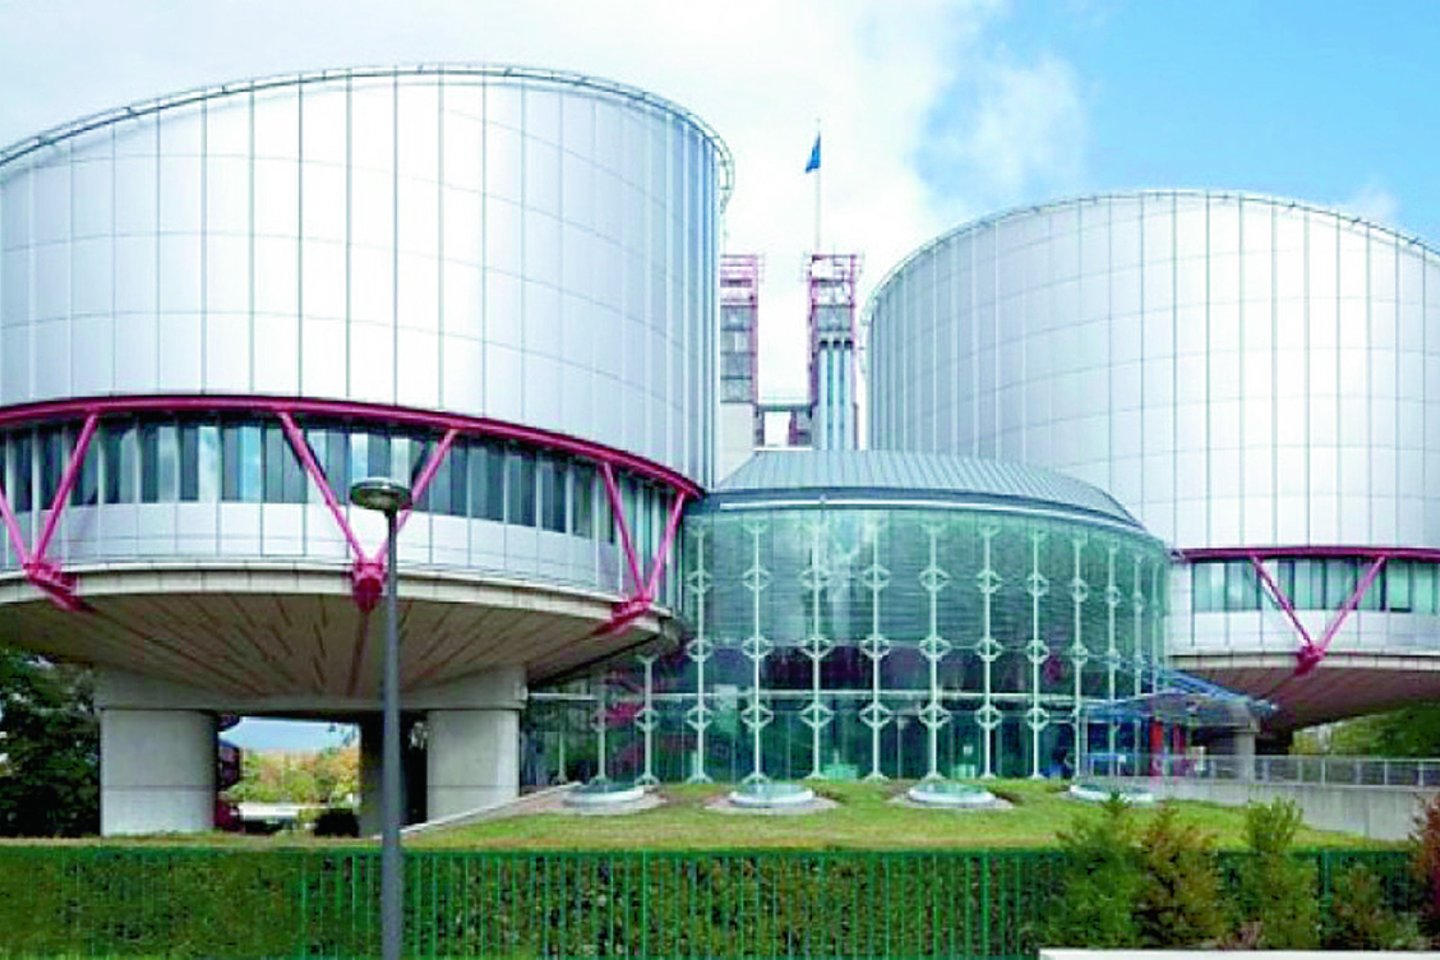  Europos žmogaus teisių teismas Strasbūre išgirdo įtariamąjį iš Lietuvos.